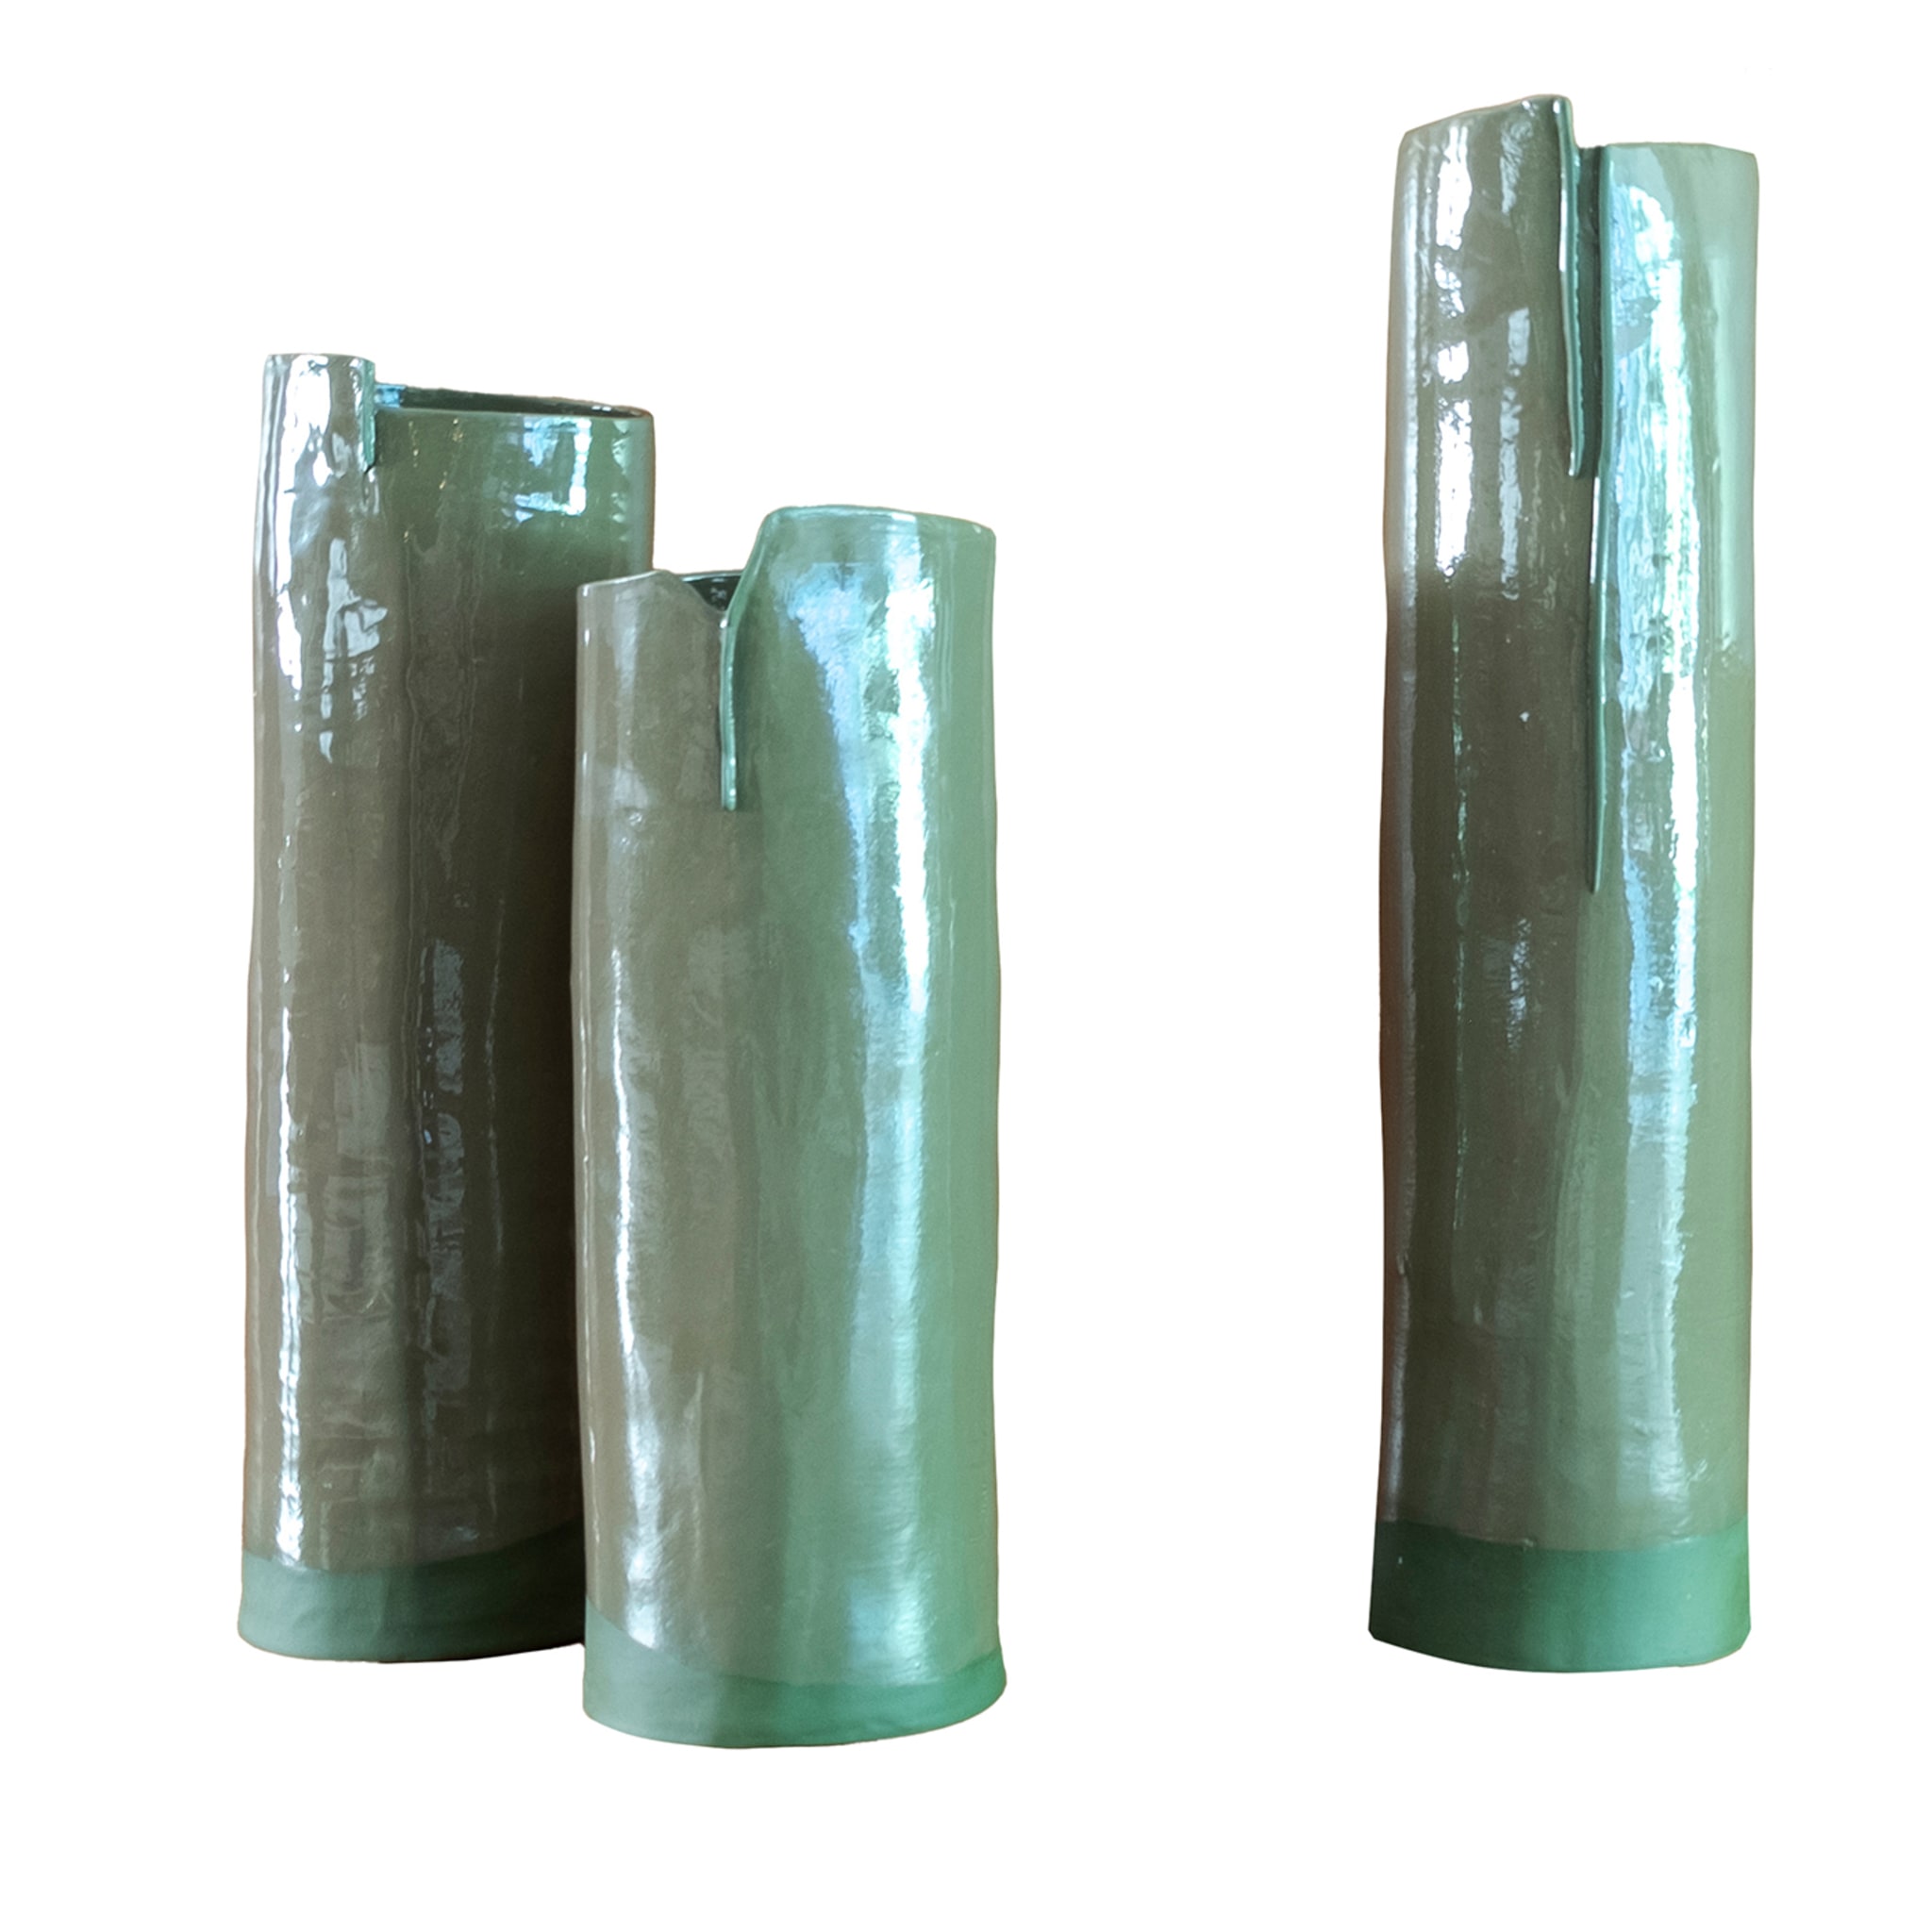 Gli Steli Set of 3 Green Vases - Main view